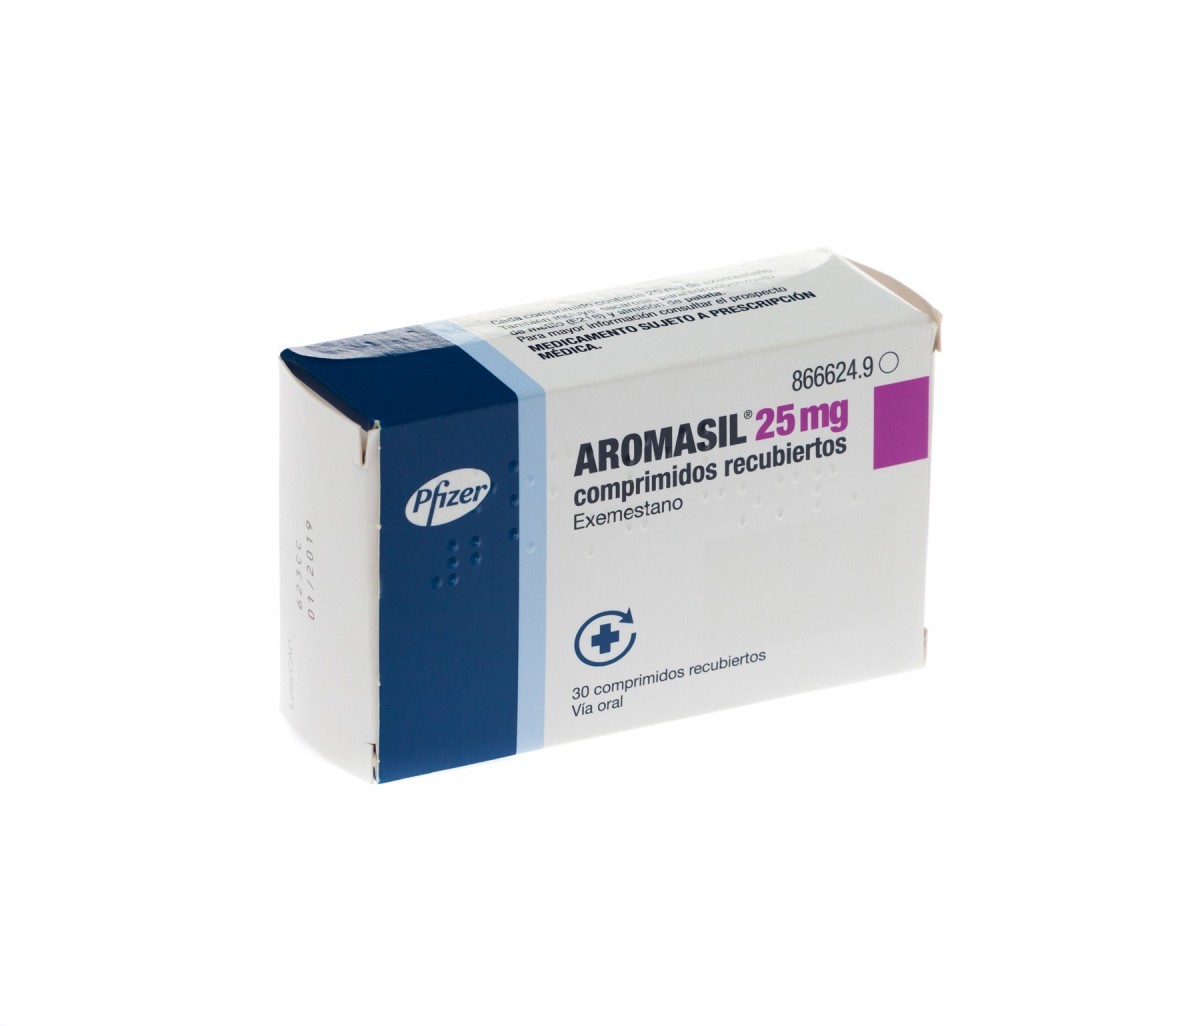 AROMASIL 25 mg COMPRIMIDOS RECUBIERTOS , 30 comprimidos fotografía del envase.